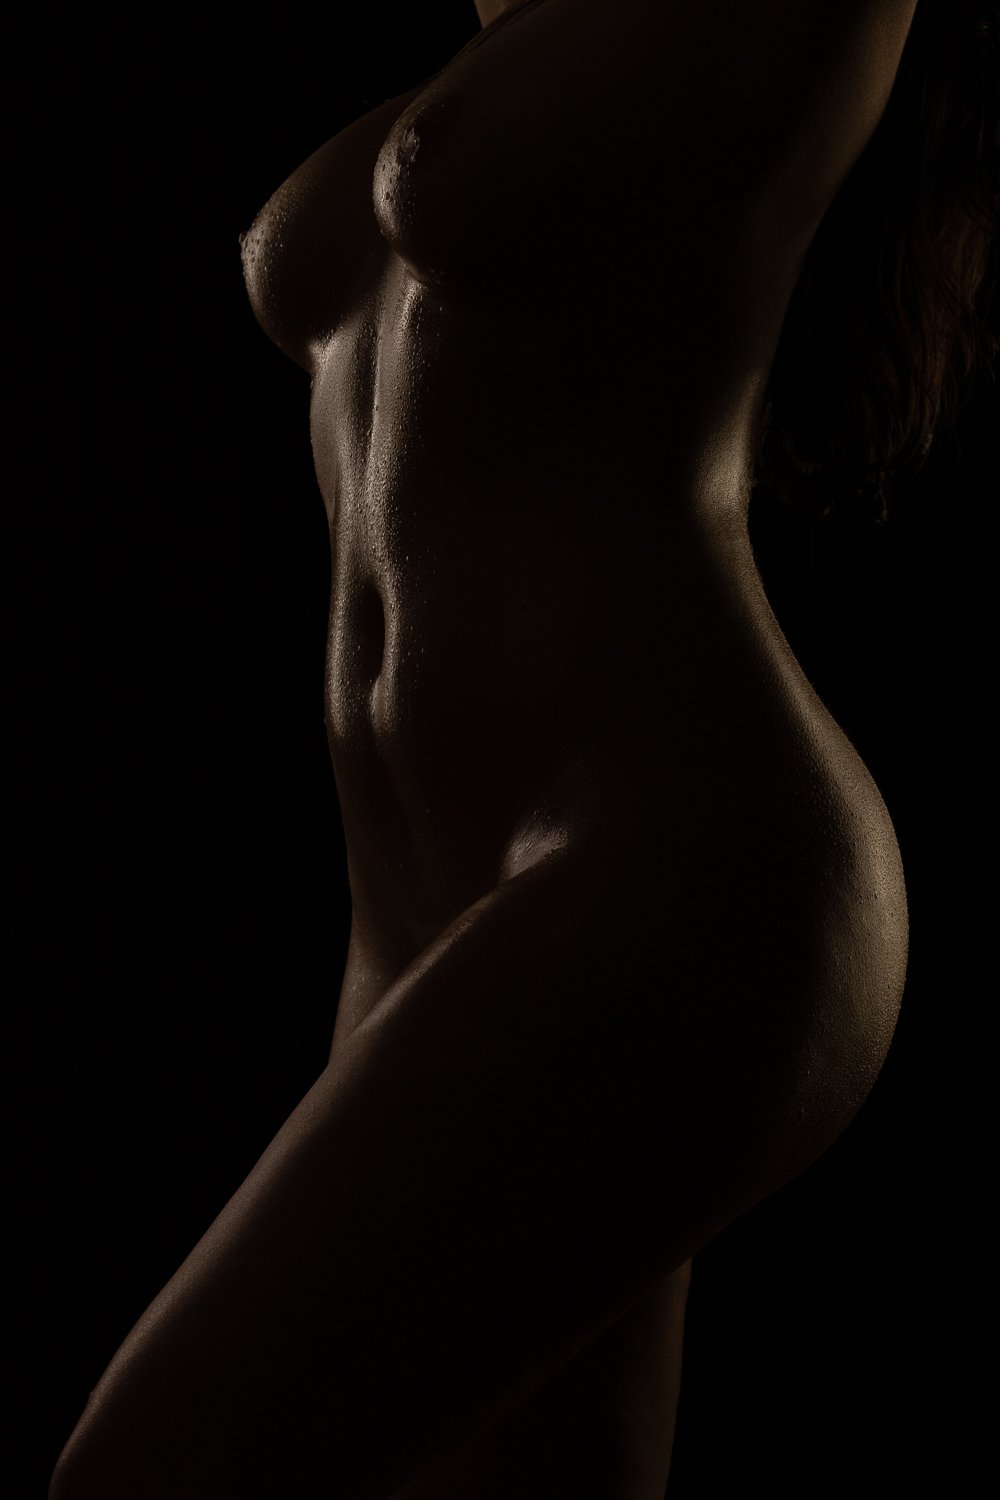 Nude silhouette